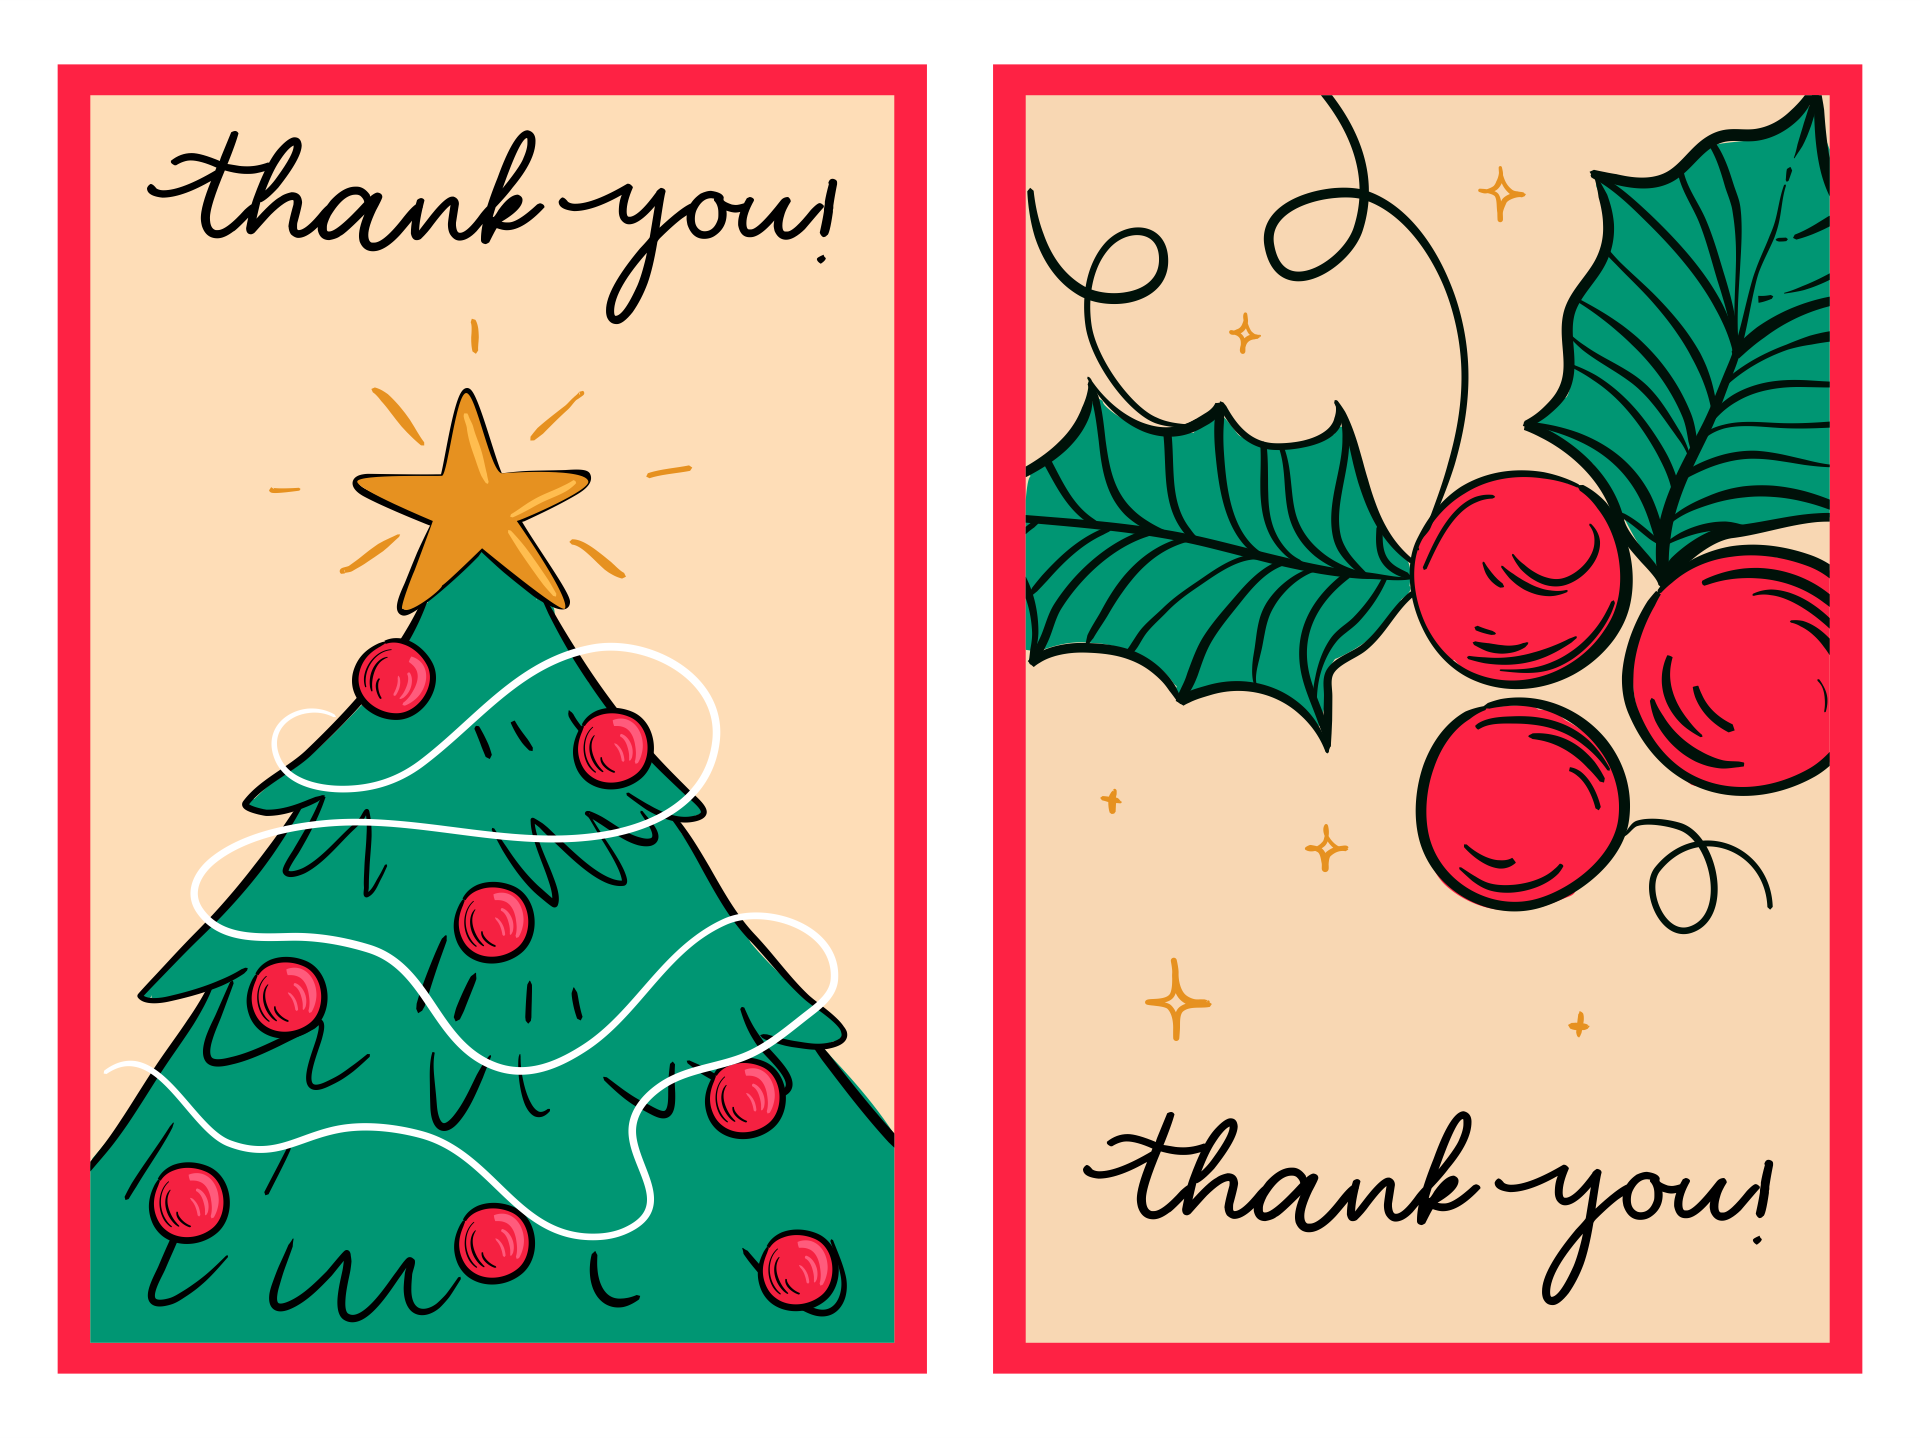 Printable Christmas Thank You Cards